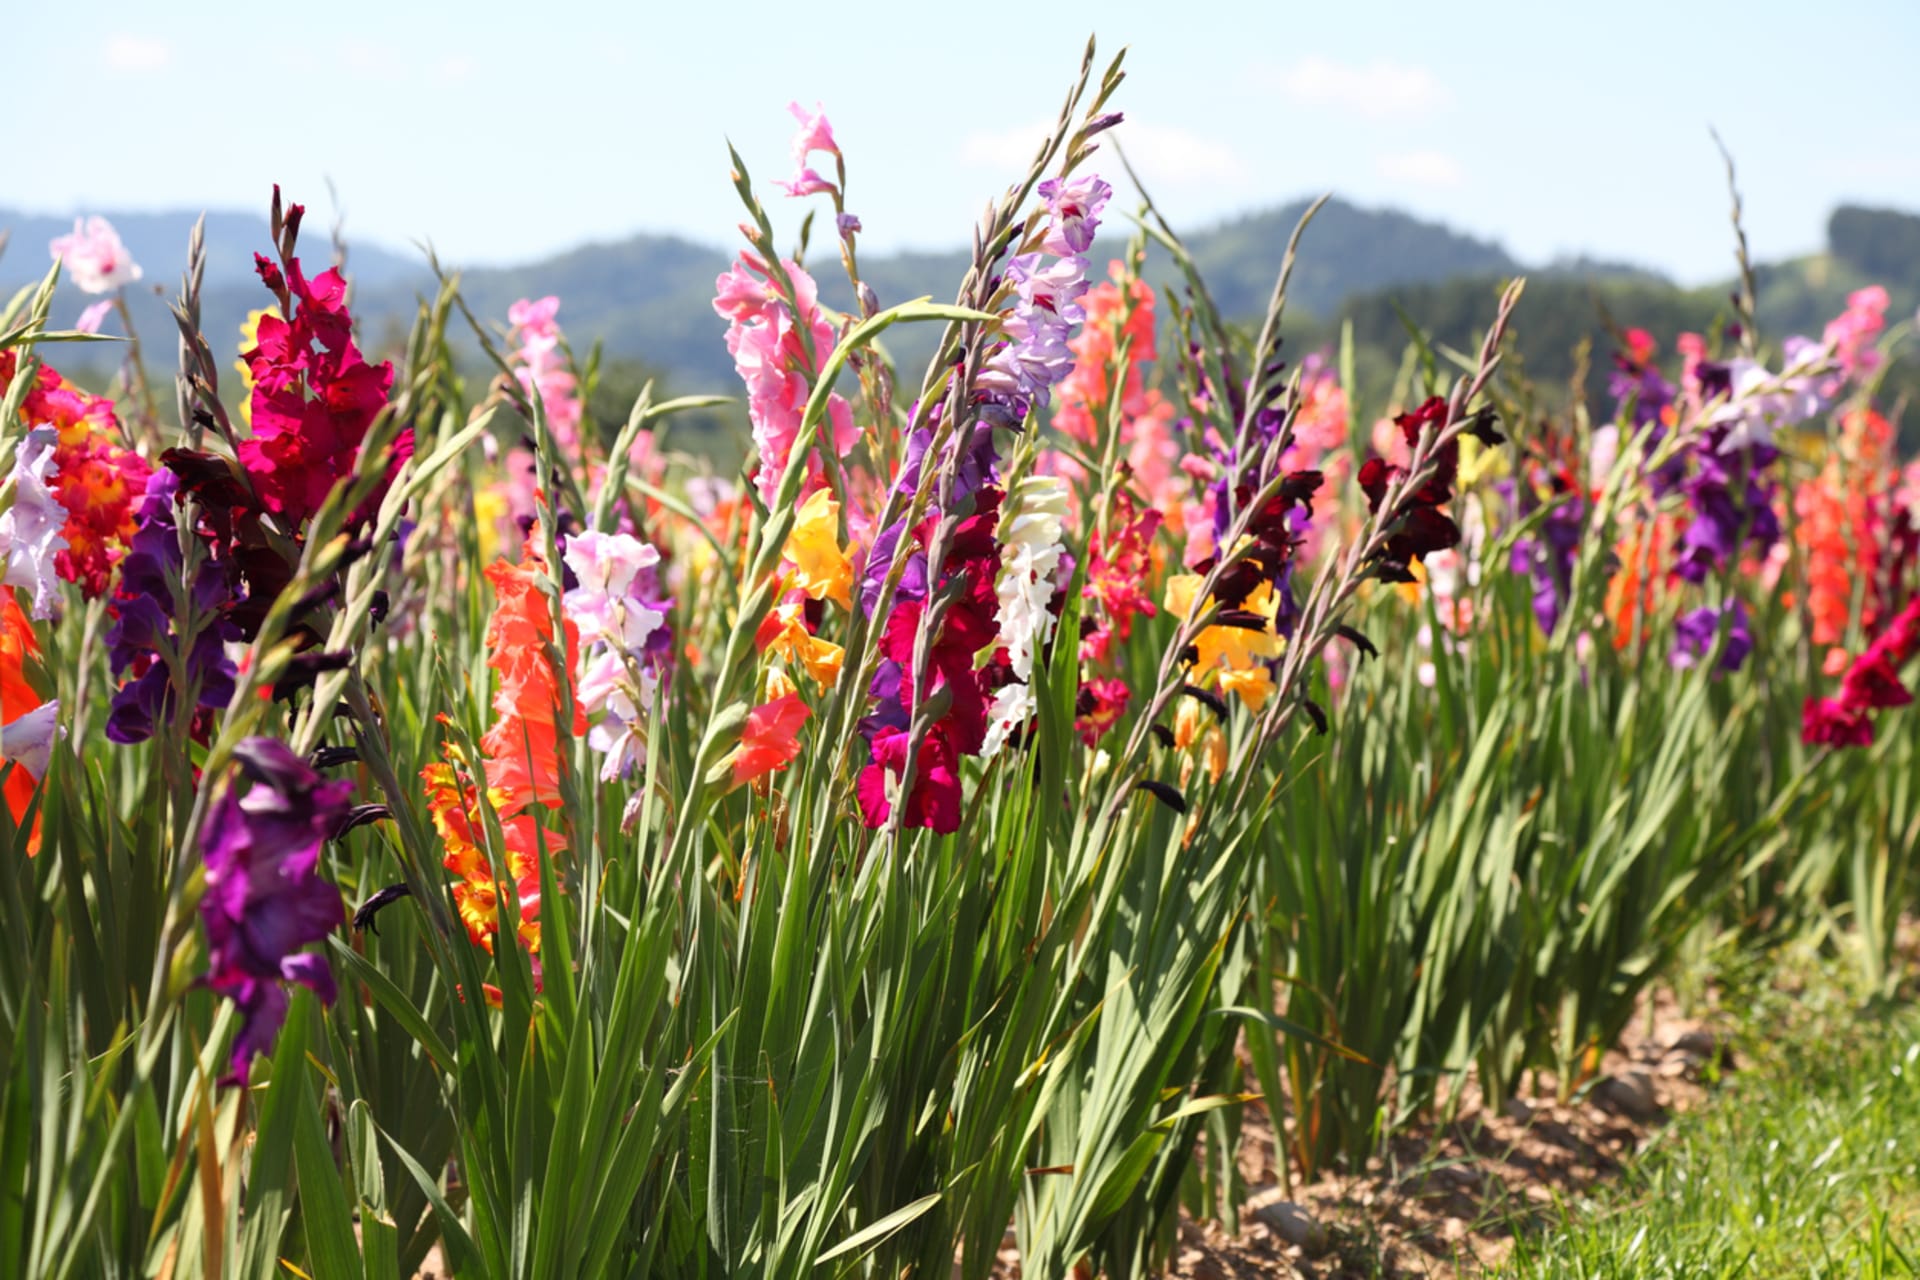 Mečík (Gladiolus) je rod jednoděložných rostlin z čeledi kosatcovité (Iridaceae)